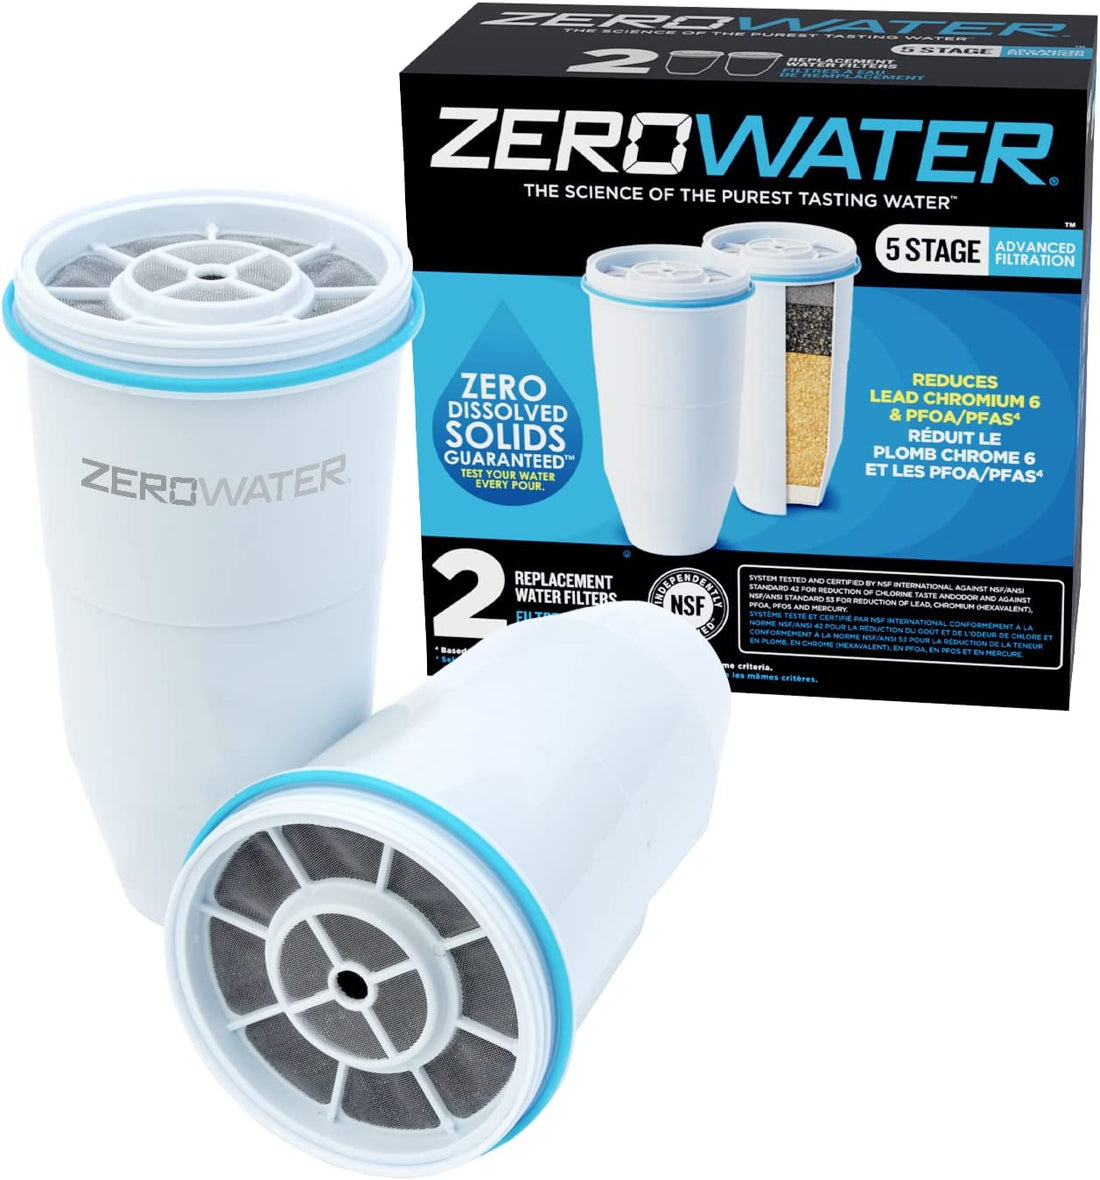 ZEROWATER 替換過濾器 2 件裝